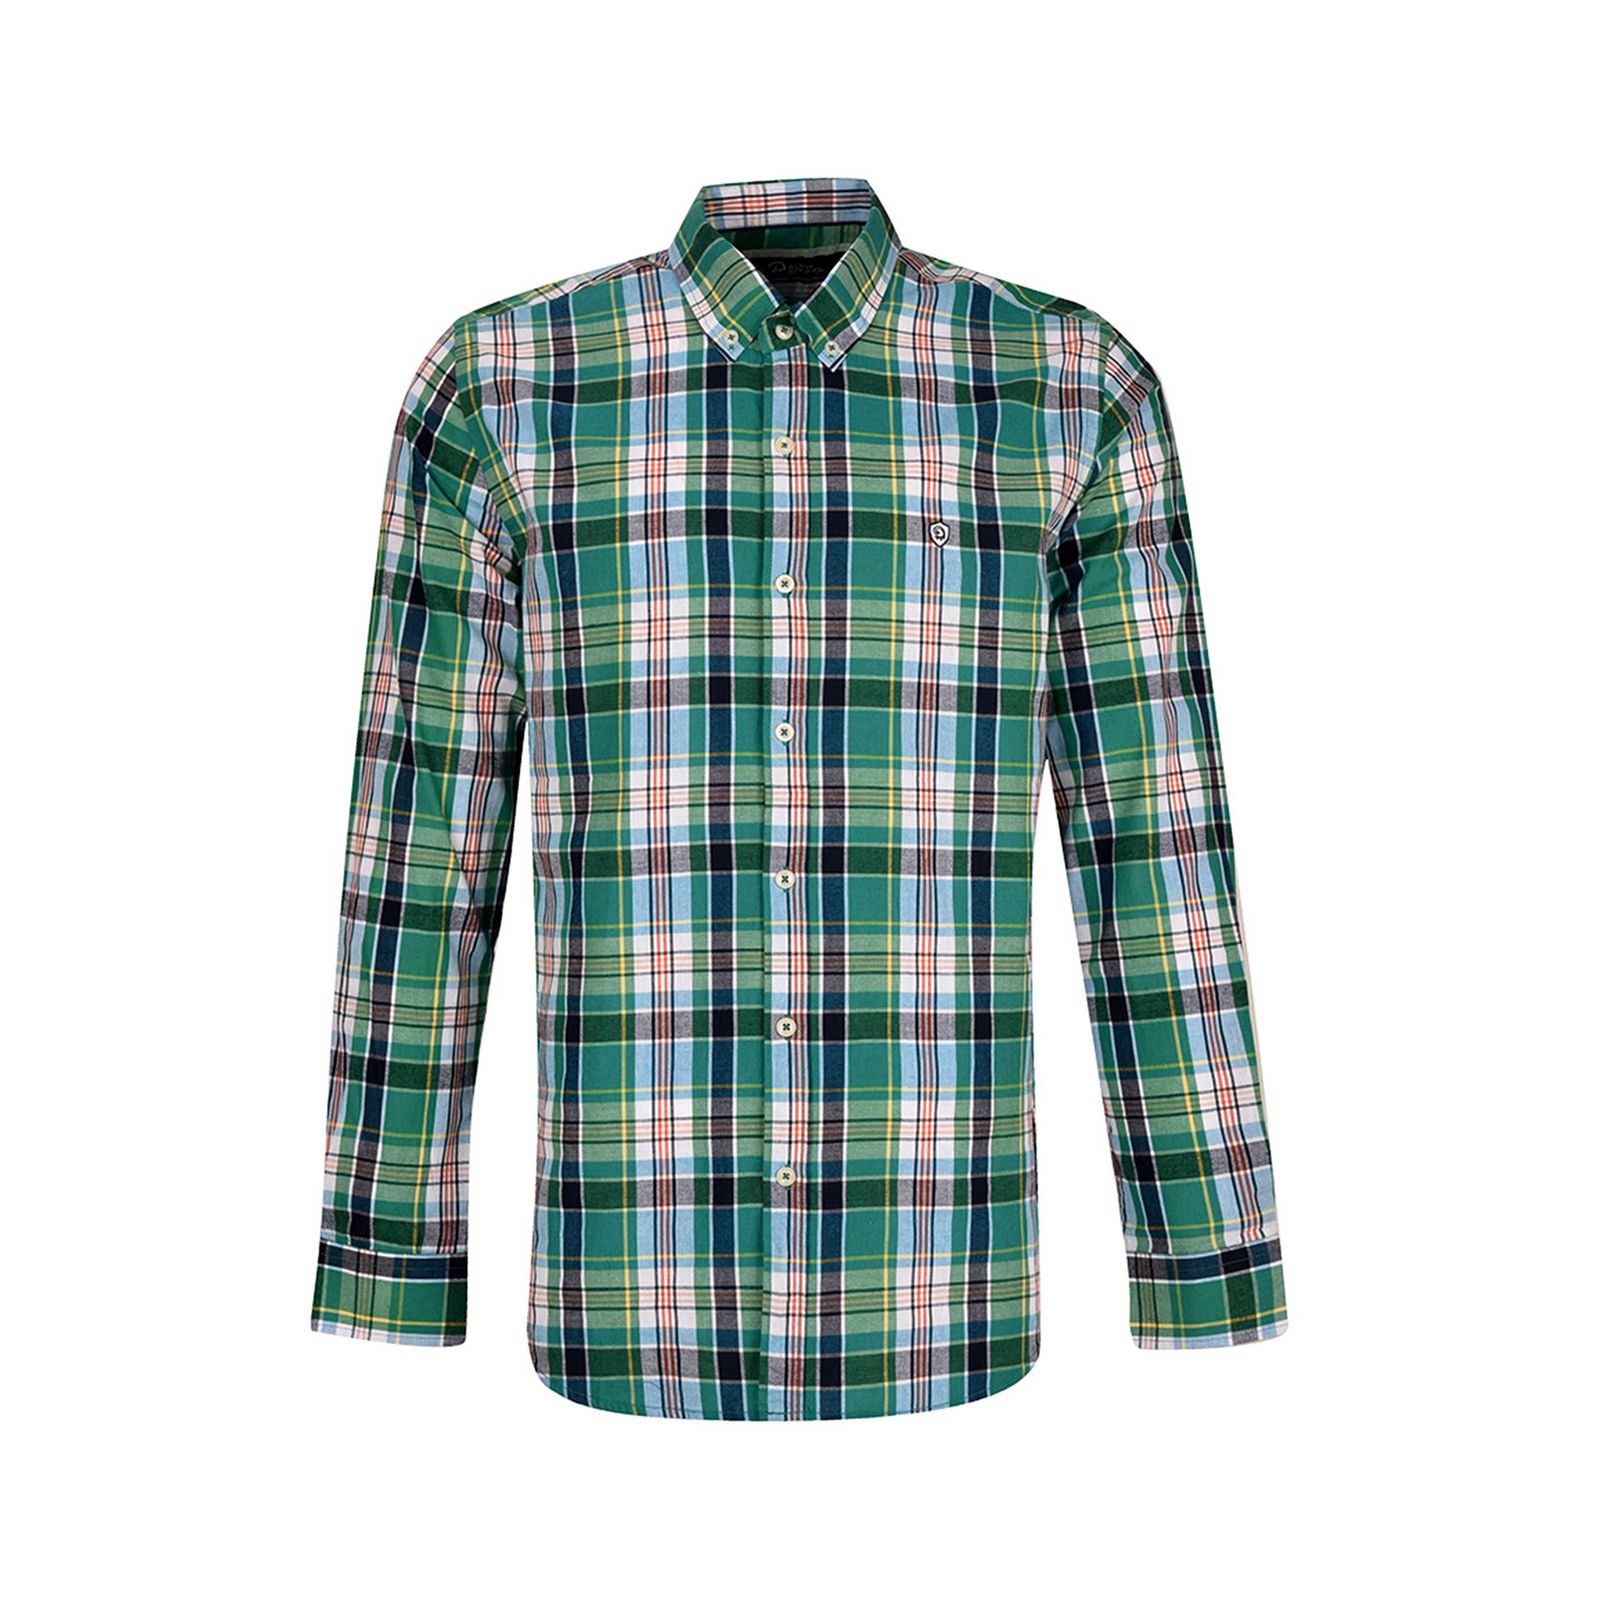 پیراهن آستین بلند مردانه بادی اسپینر مدل 1129 کد 6 رنگ سبز -  - 1